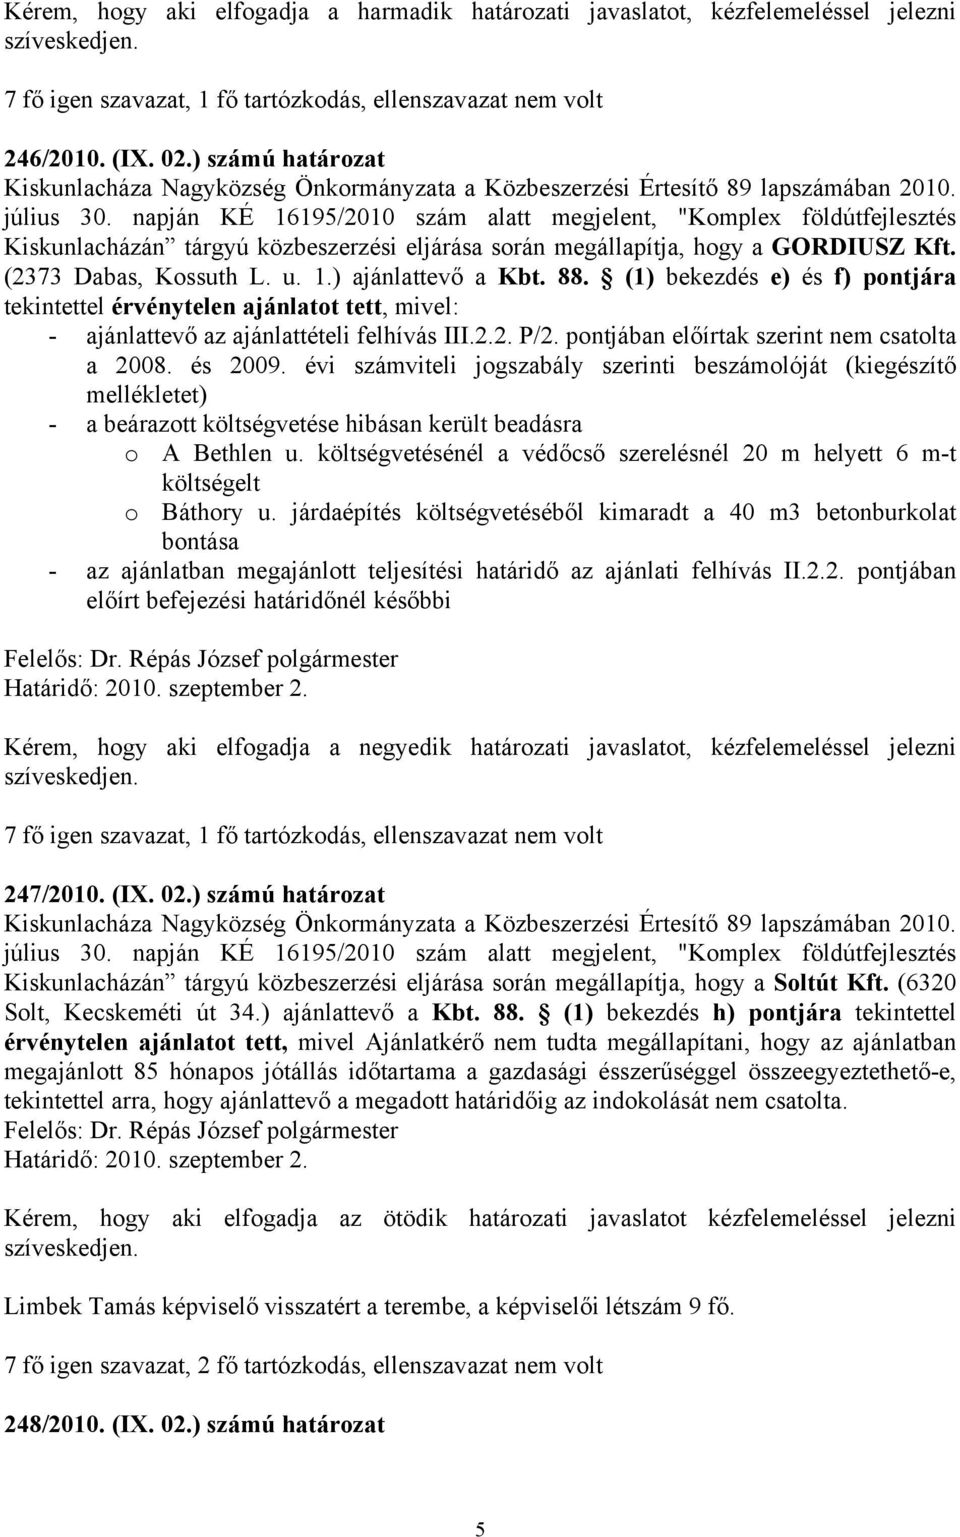 napján KÉ 16195/2010 szám alatt megjelent, "Komplex földútfejlesztés Kiskunlacházán tárgyú közbeszerzési eljárása során megállapítja, hogy a GORDIUSZ Kft. (2373 Dabas, Kossuth L. u. 1.) ajánlattevő a Kbt.